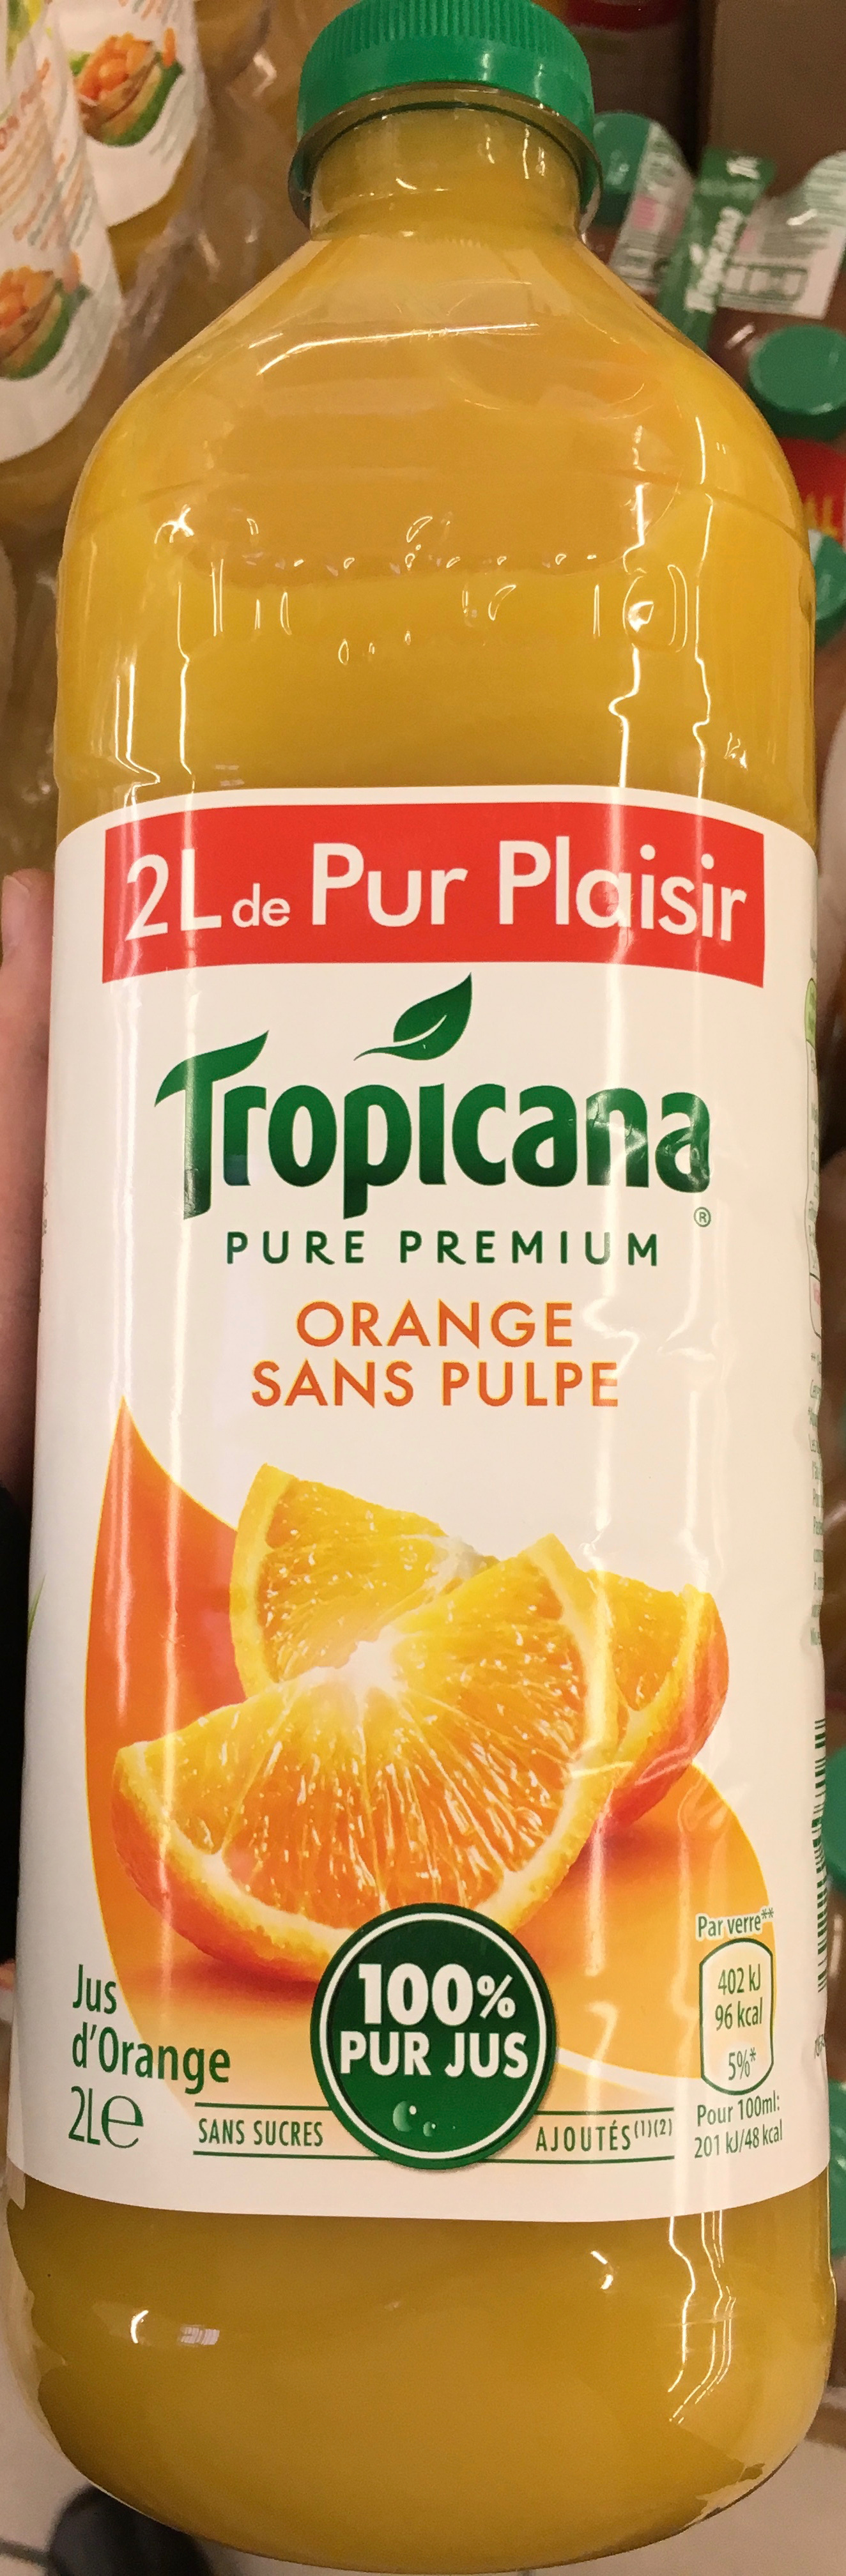 Pure Premium Orange sans pulpe - Produit